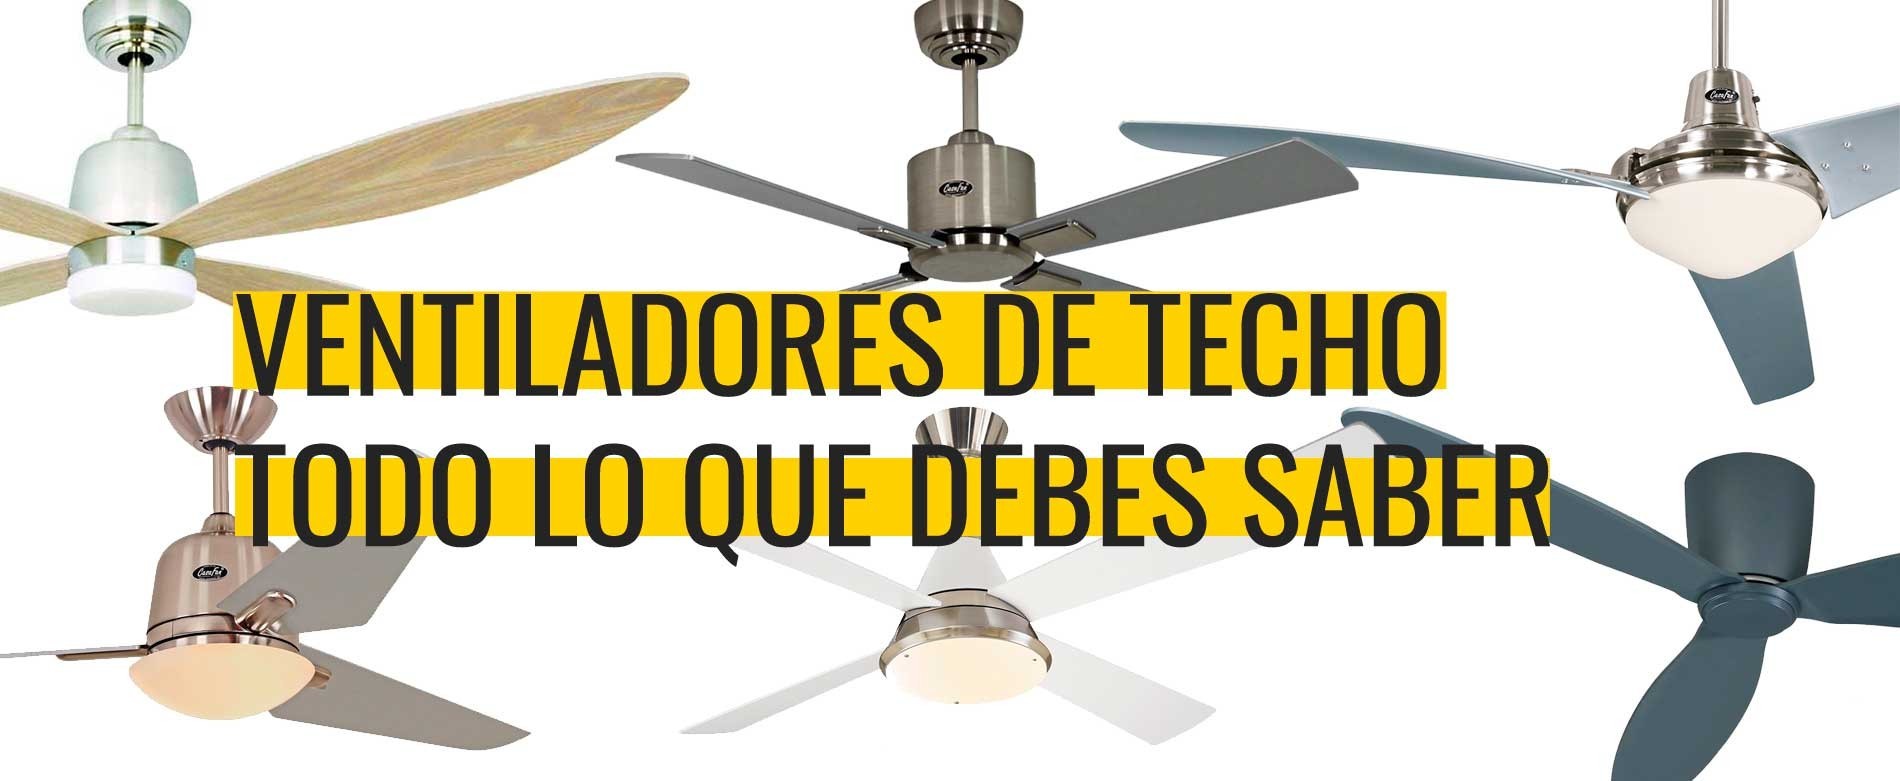 Ventiladores techo: ¿Sabes todo lo que necesitas? | Gavri.es - Blog de Gavri.es